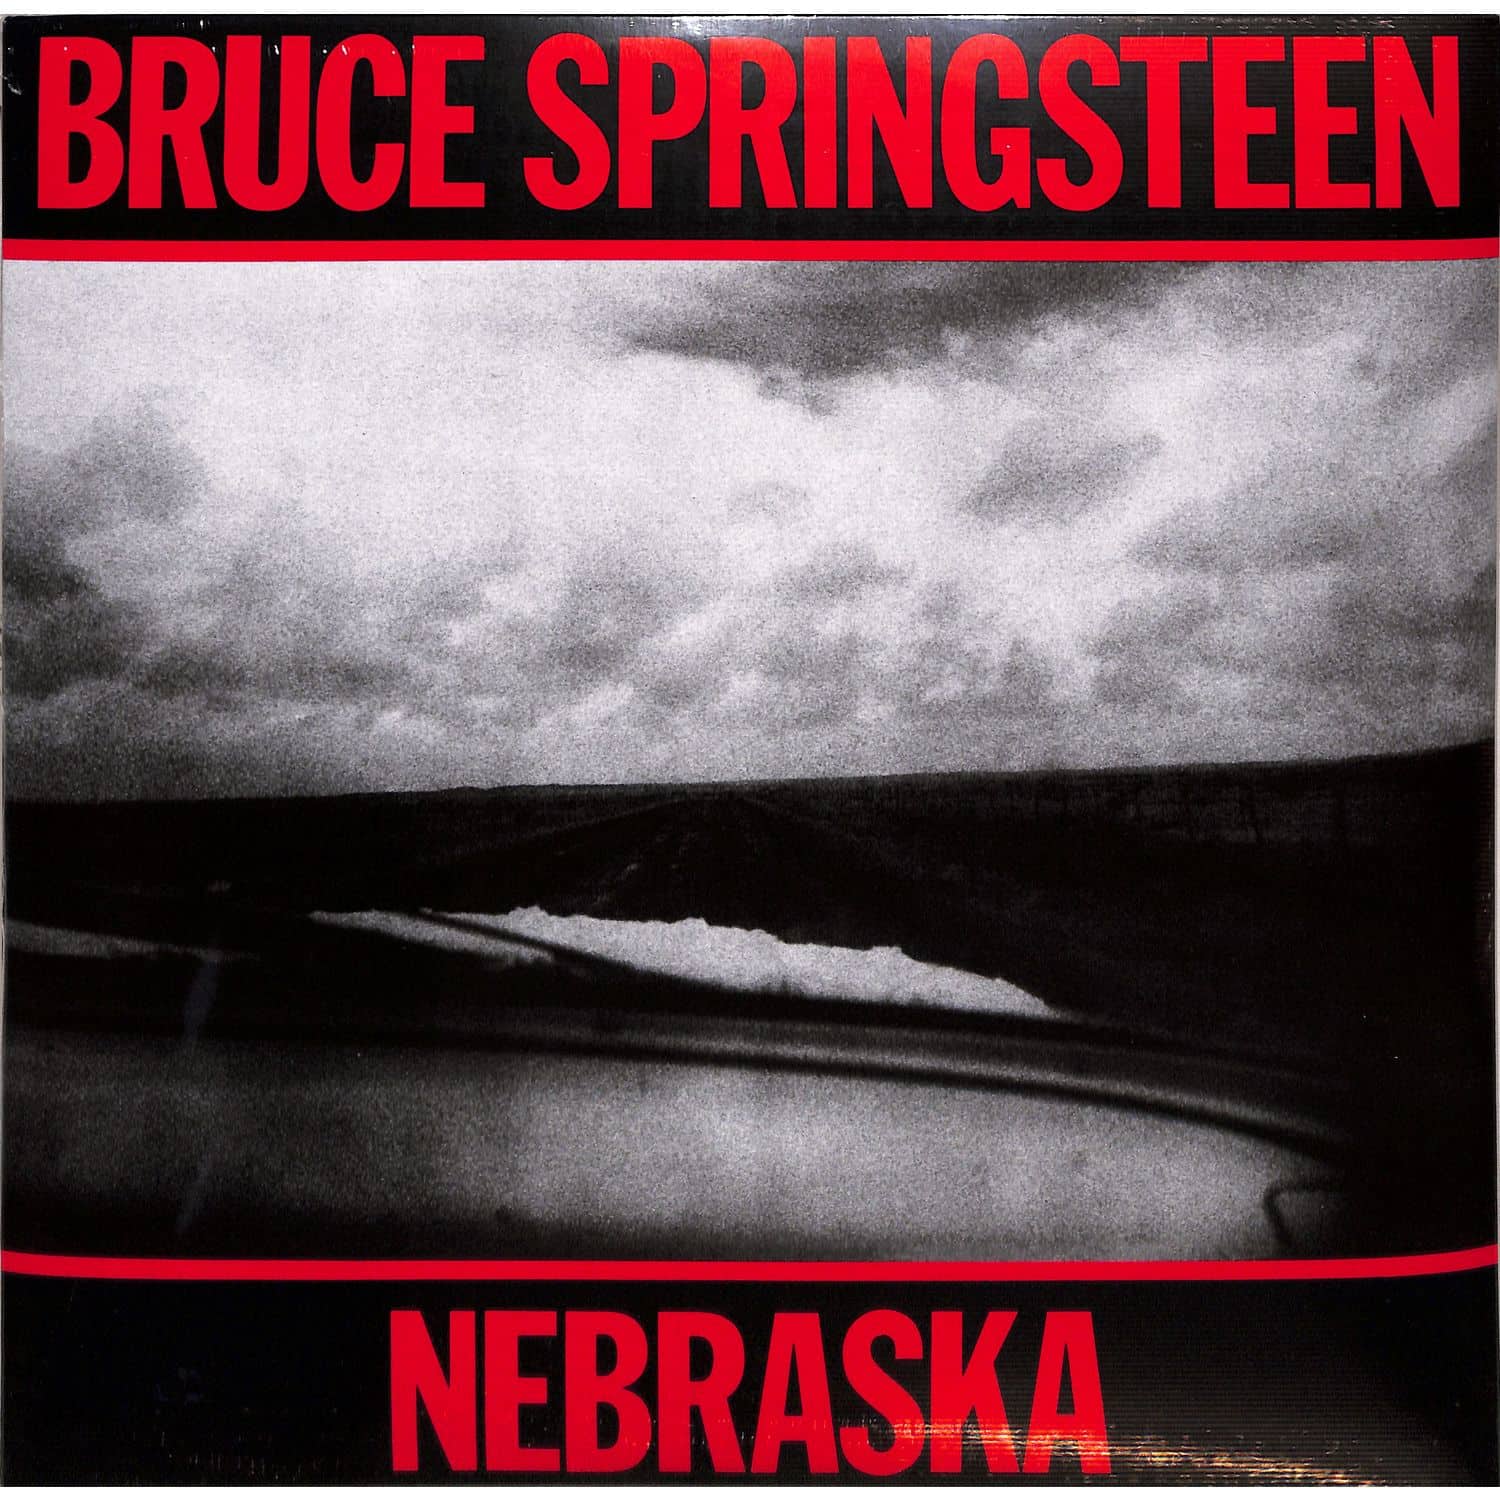 Bruce Springsteen - NEBRASKA 